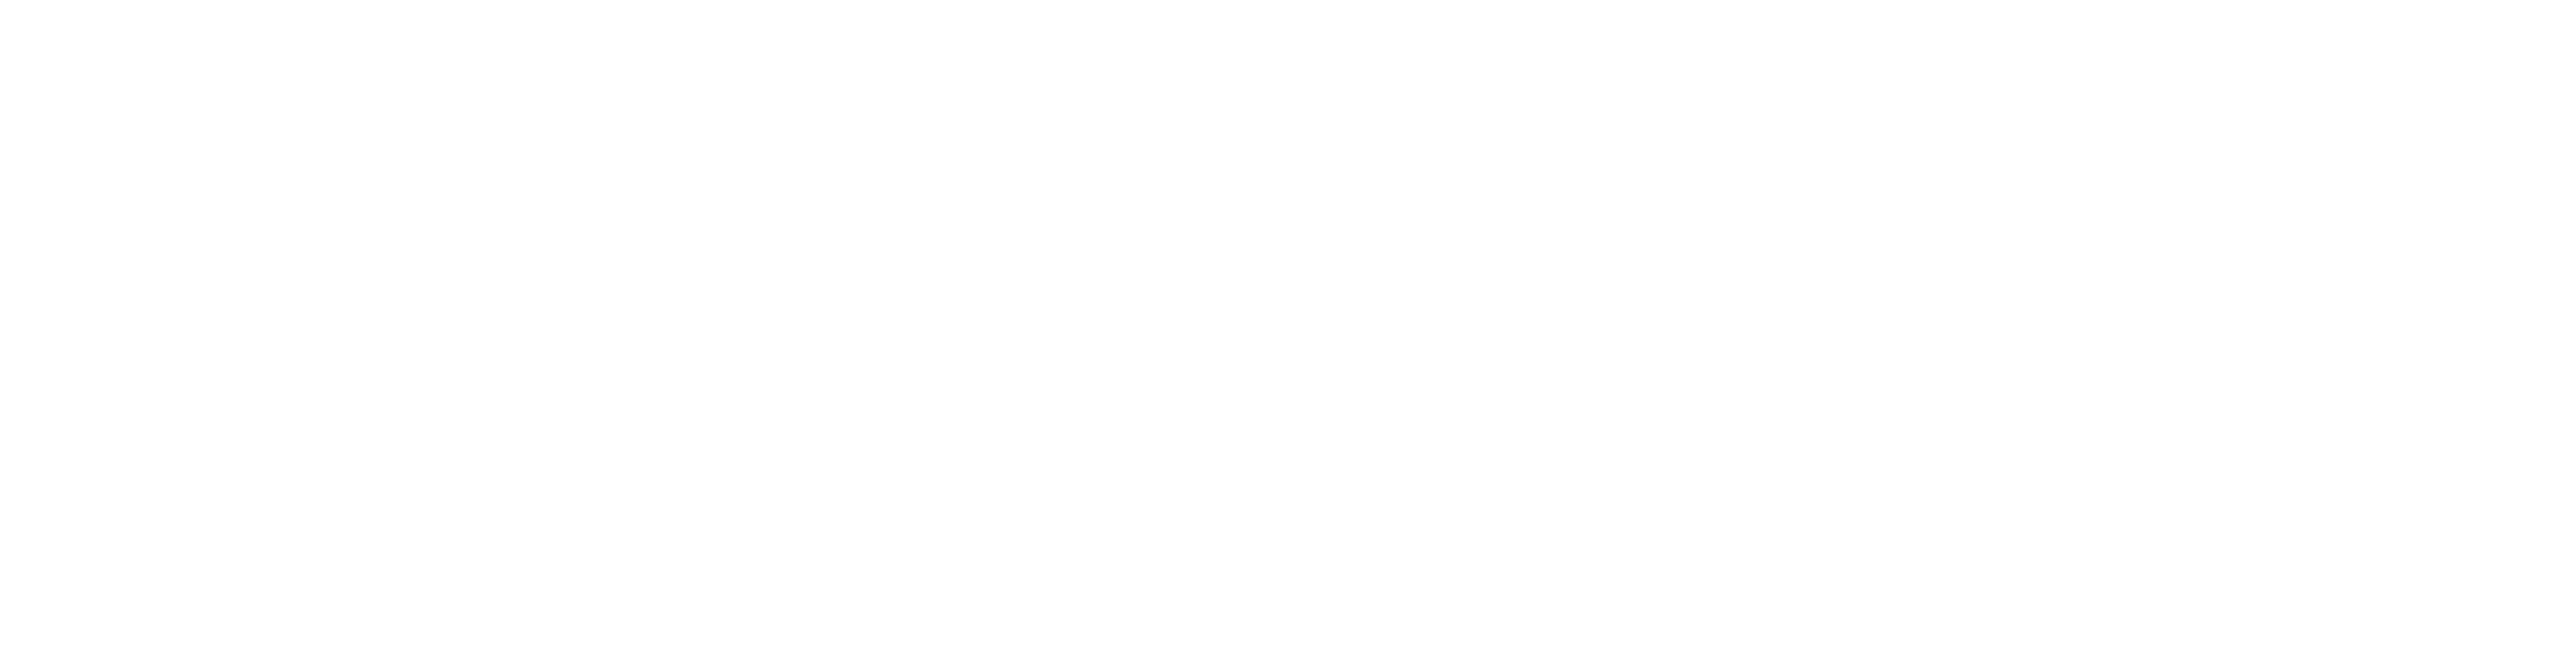 Cyclops Logo